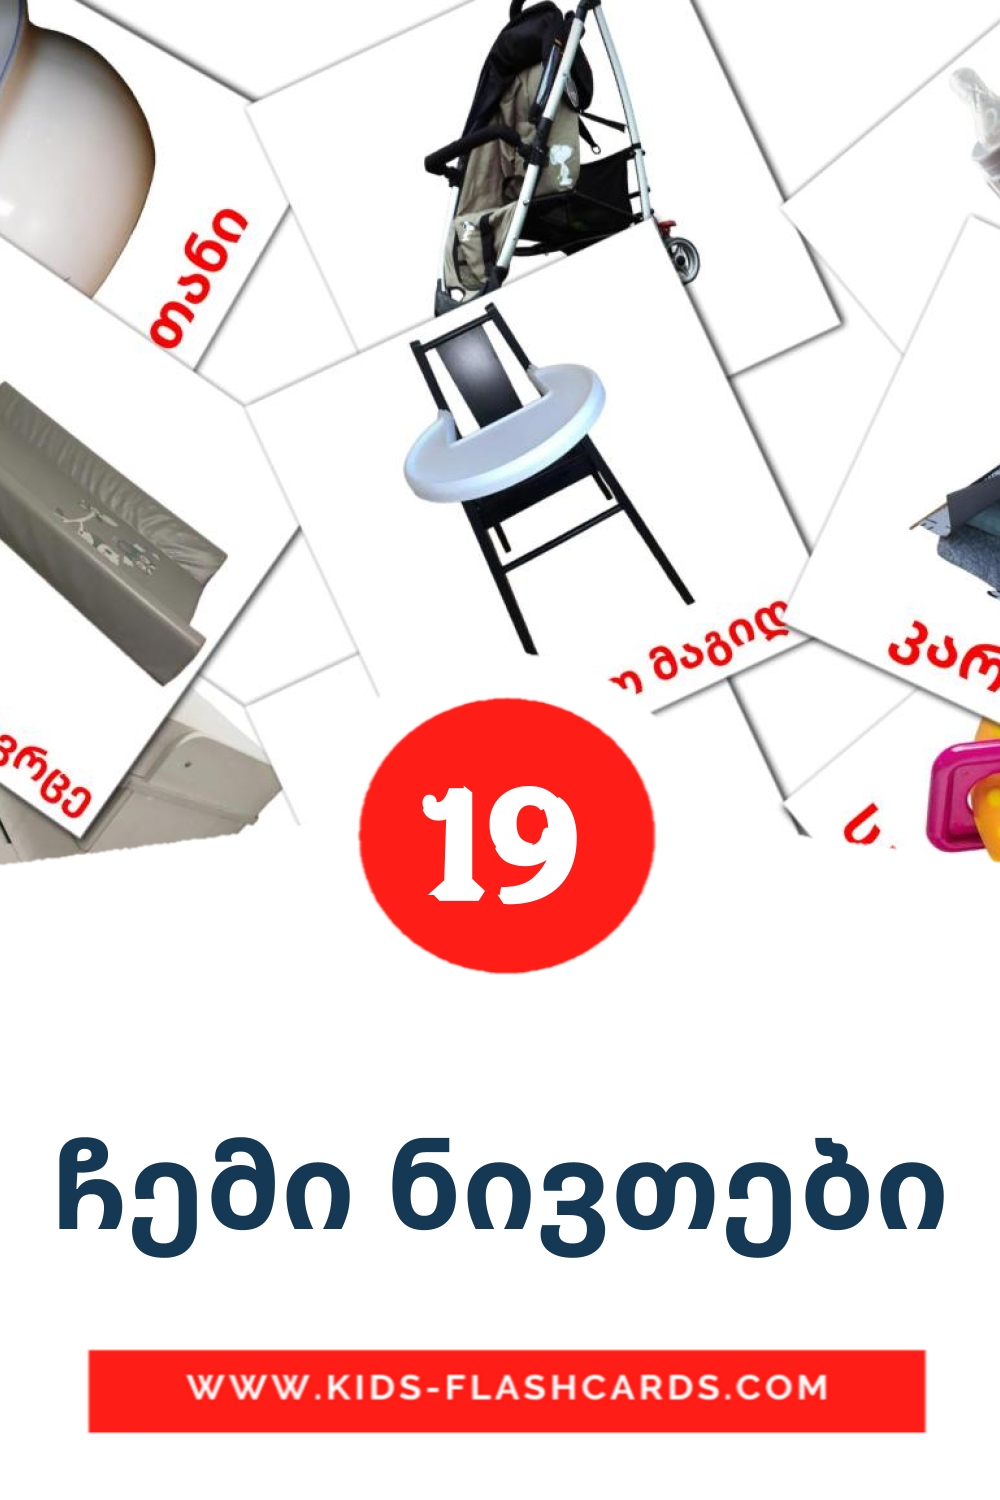 19 tarjetas didacticas de ჩემი ნივთები para el jardín de infancia en georgiano